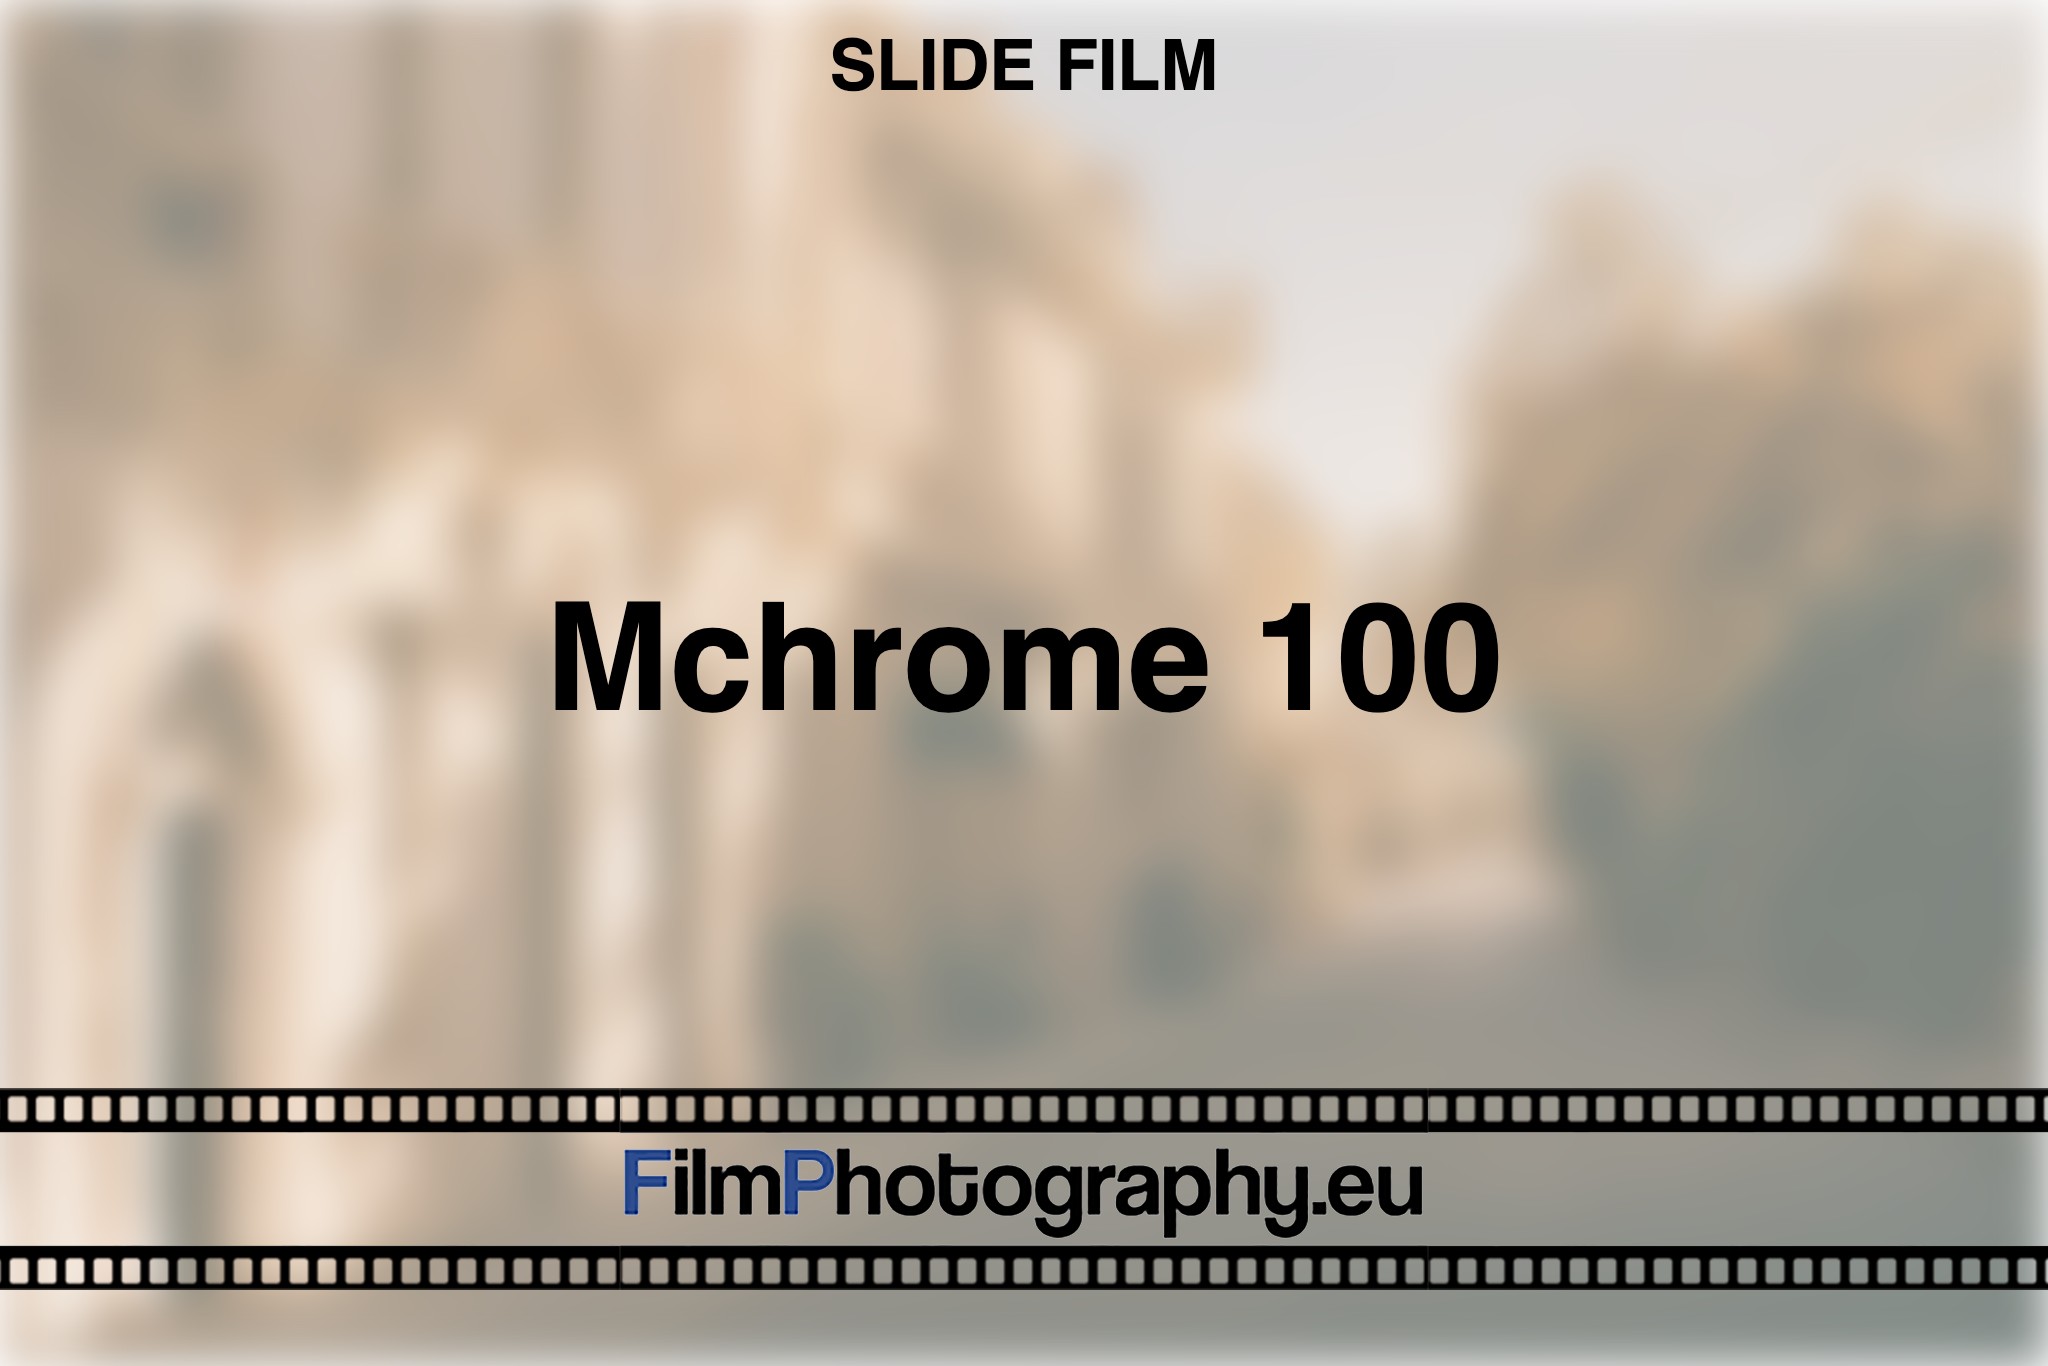 mchrome-100-slide-film-bnv